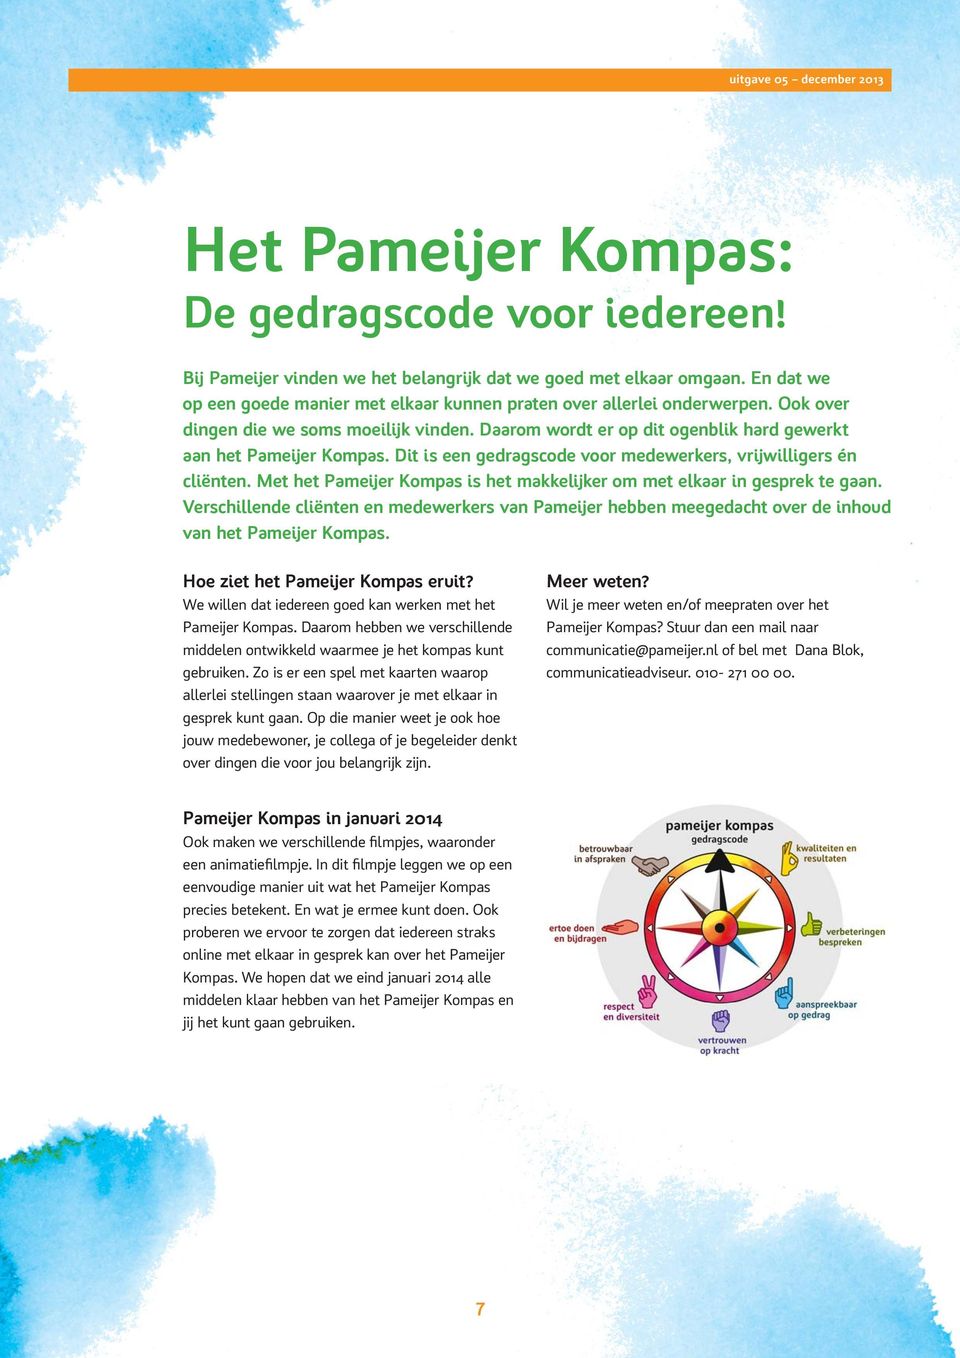 Dit is een gedragscode voor medewerkers, vrijwilligers én cliënten. Met het Pameijer Kompas is het makkelijker om met elkaar in gesprek te gaan.